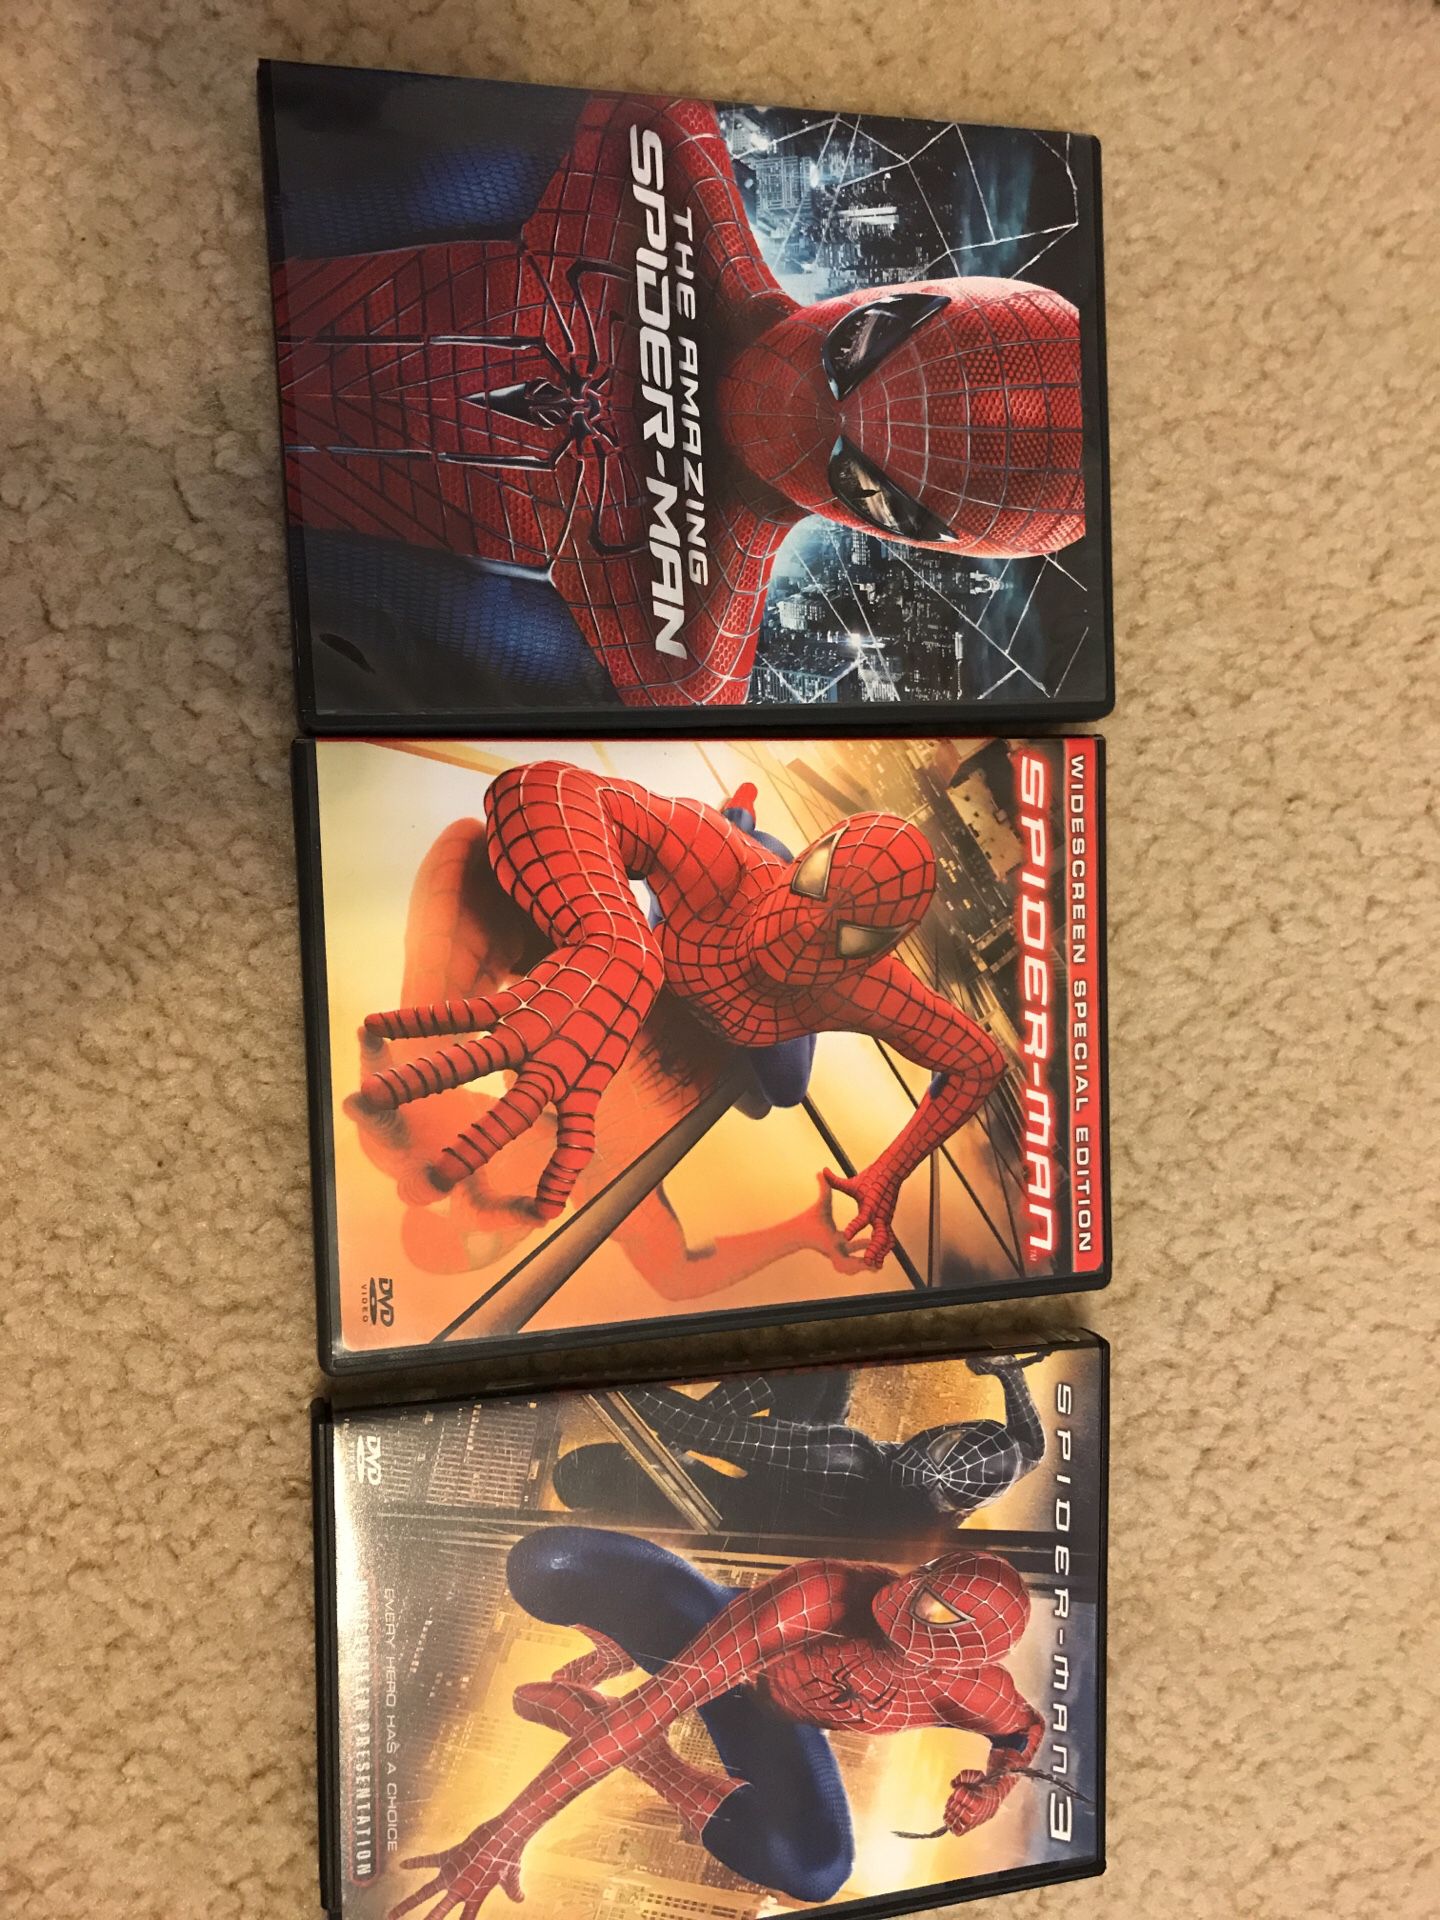 Spider-Man DVD Collection